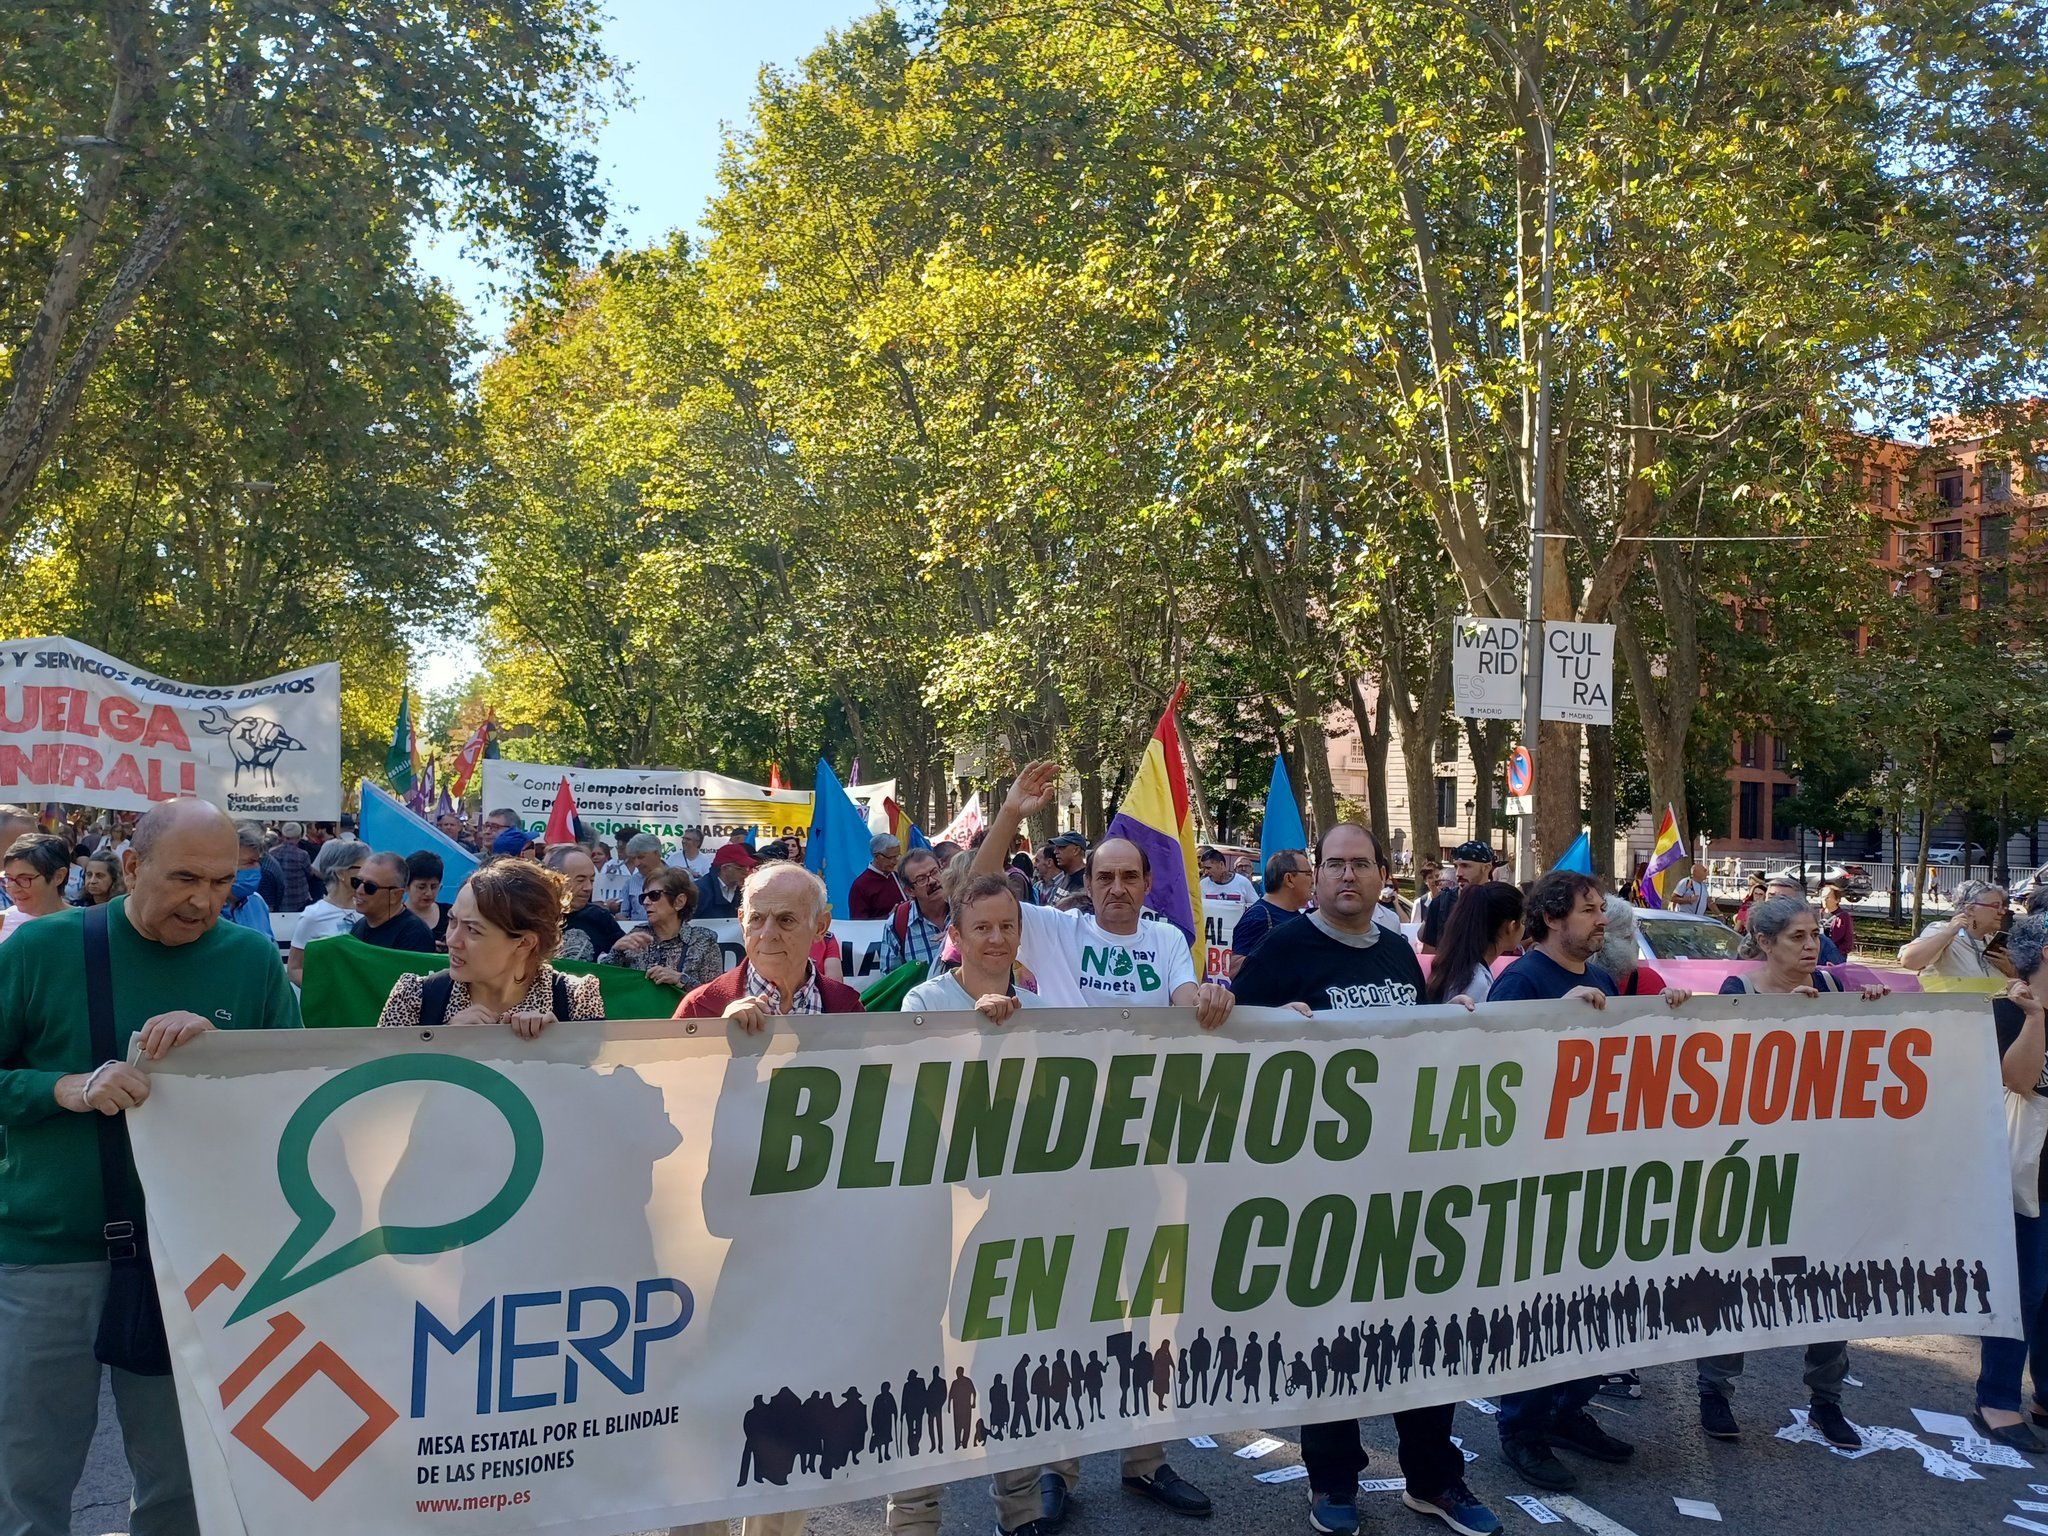 José Sacristán o Paco León muestran su apoyo a la manifestación de pensionistas del 17 de diciembre